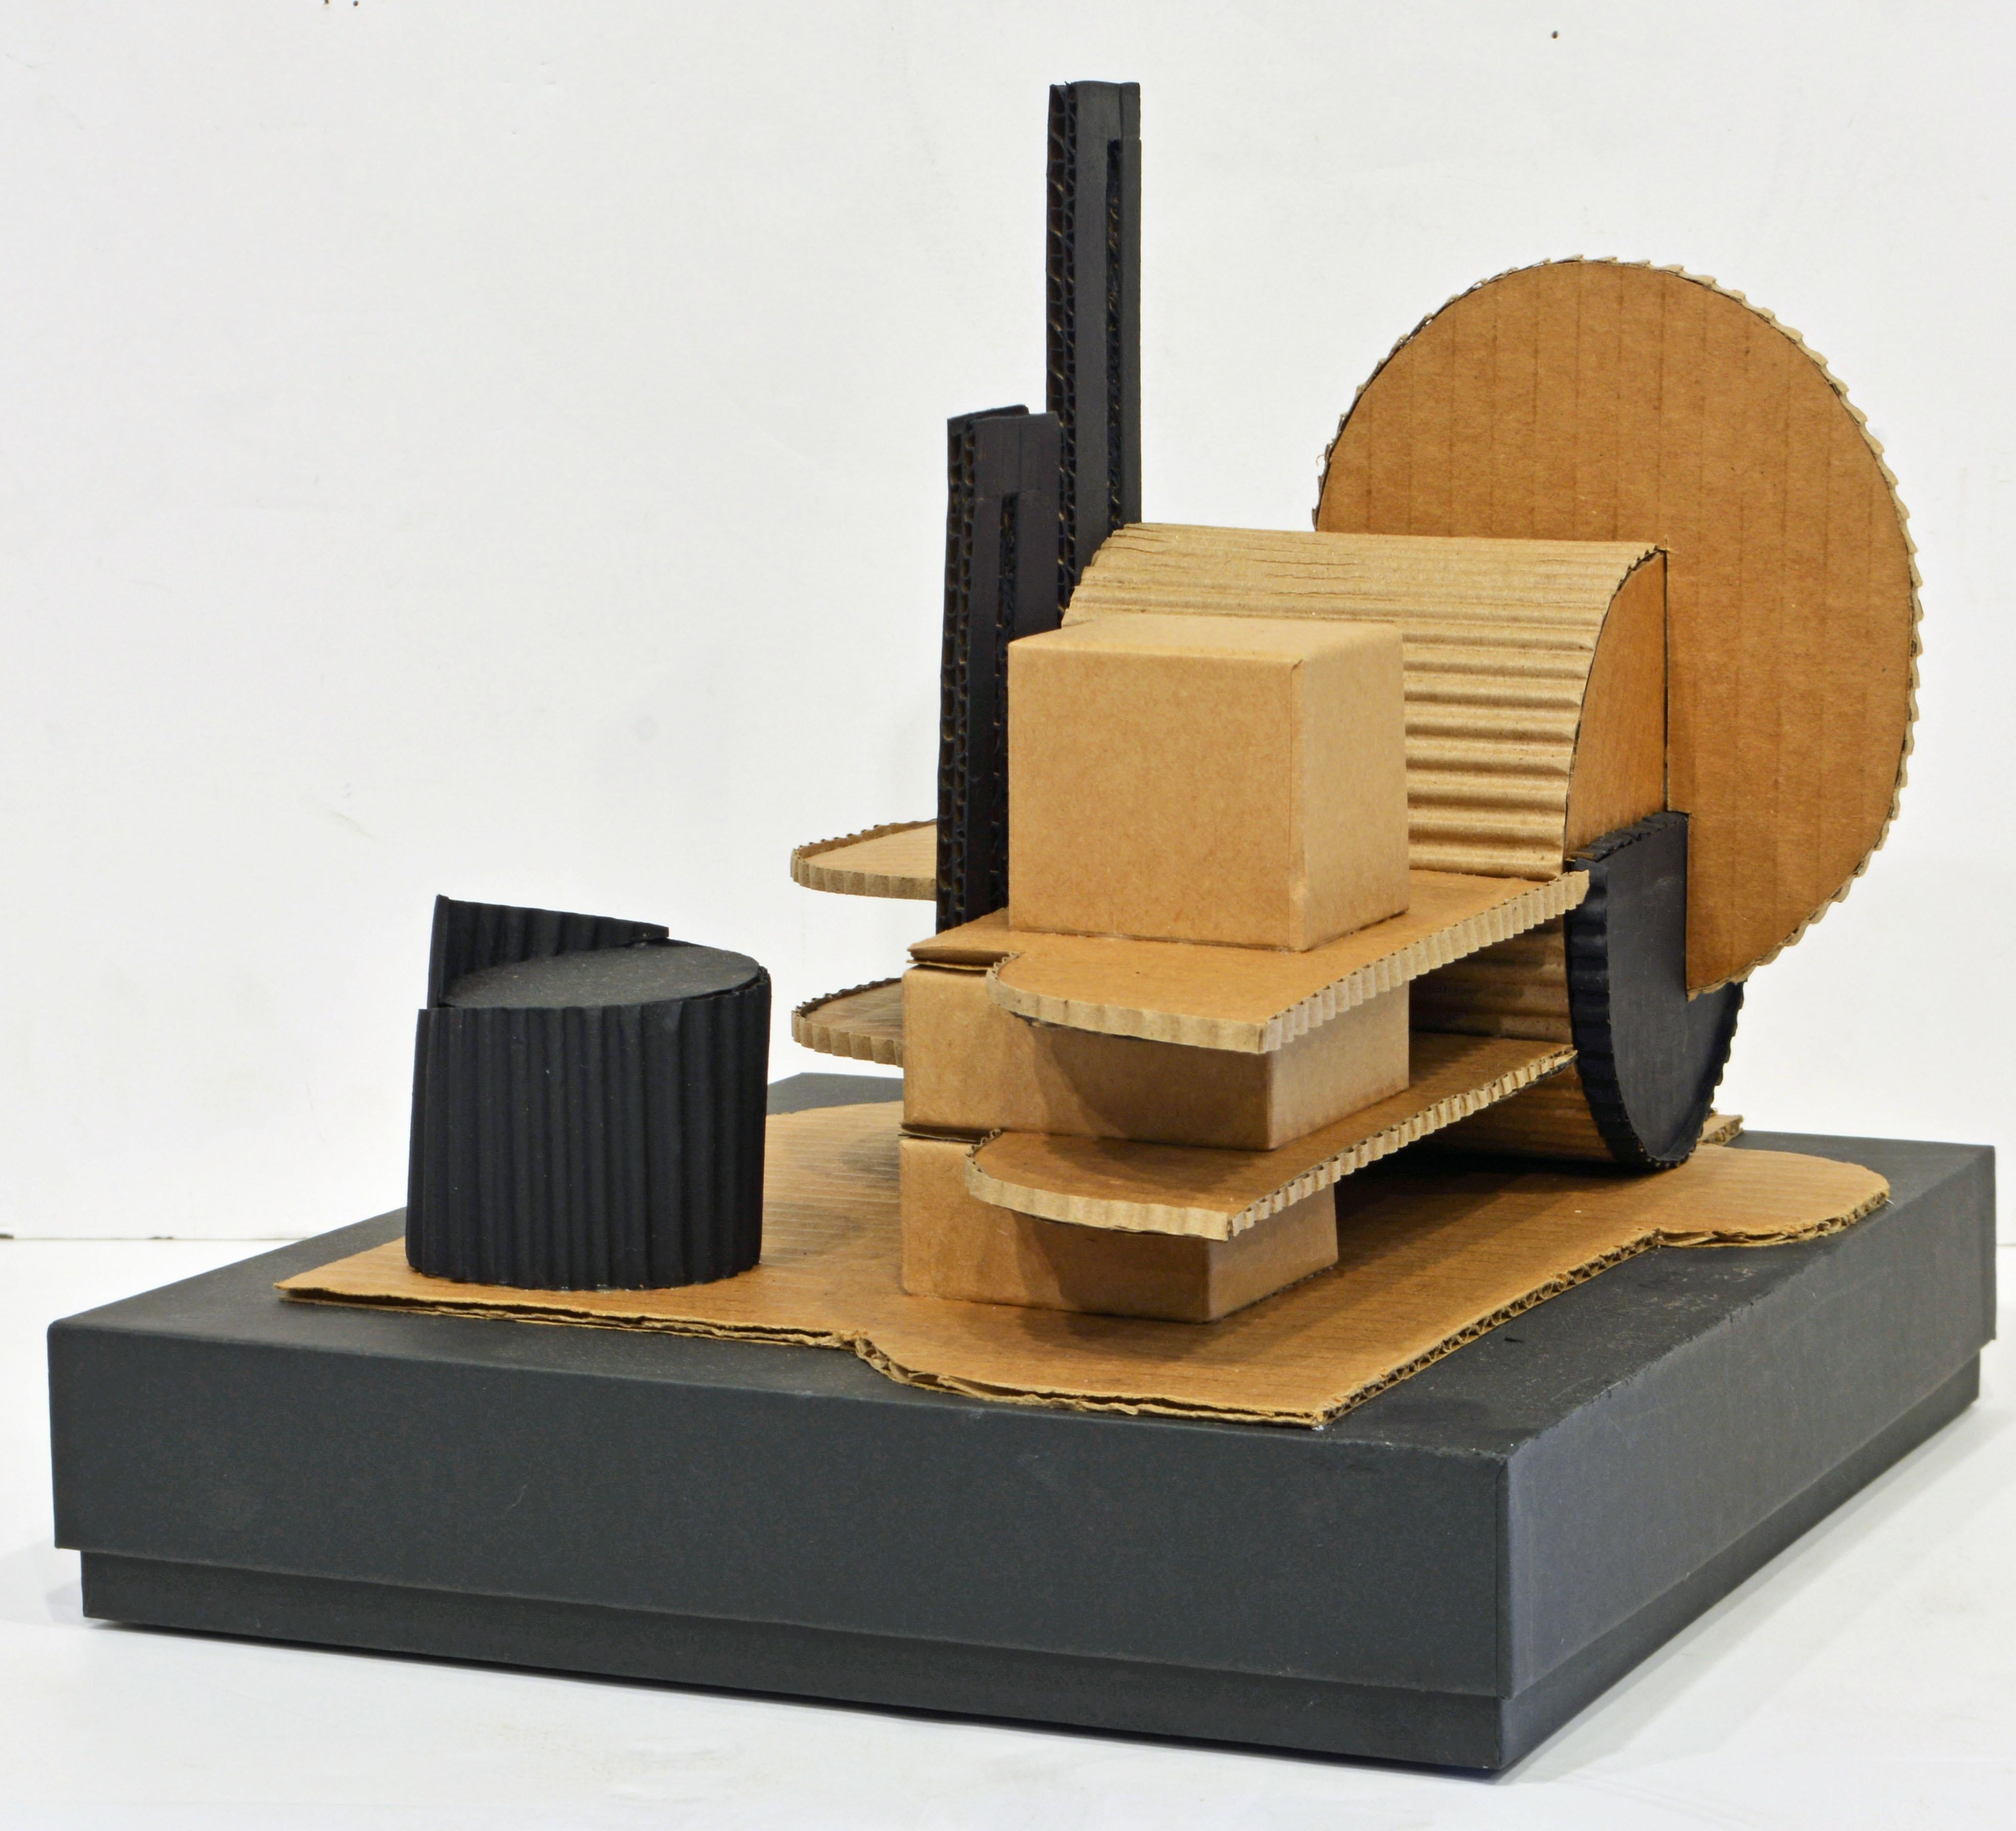 Numéro 3 d'une série de sculptures similaires, cette création unique de Virgil Greca présente des éléments du mouvement moderniste précoce tel qu'il a été démontré par les artistes du Bauhaus. Il s'agit d'une forme libre avec des références